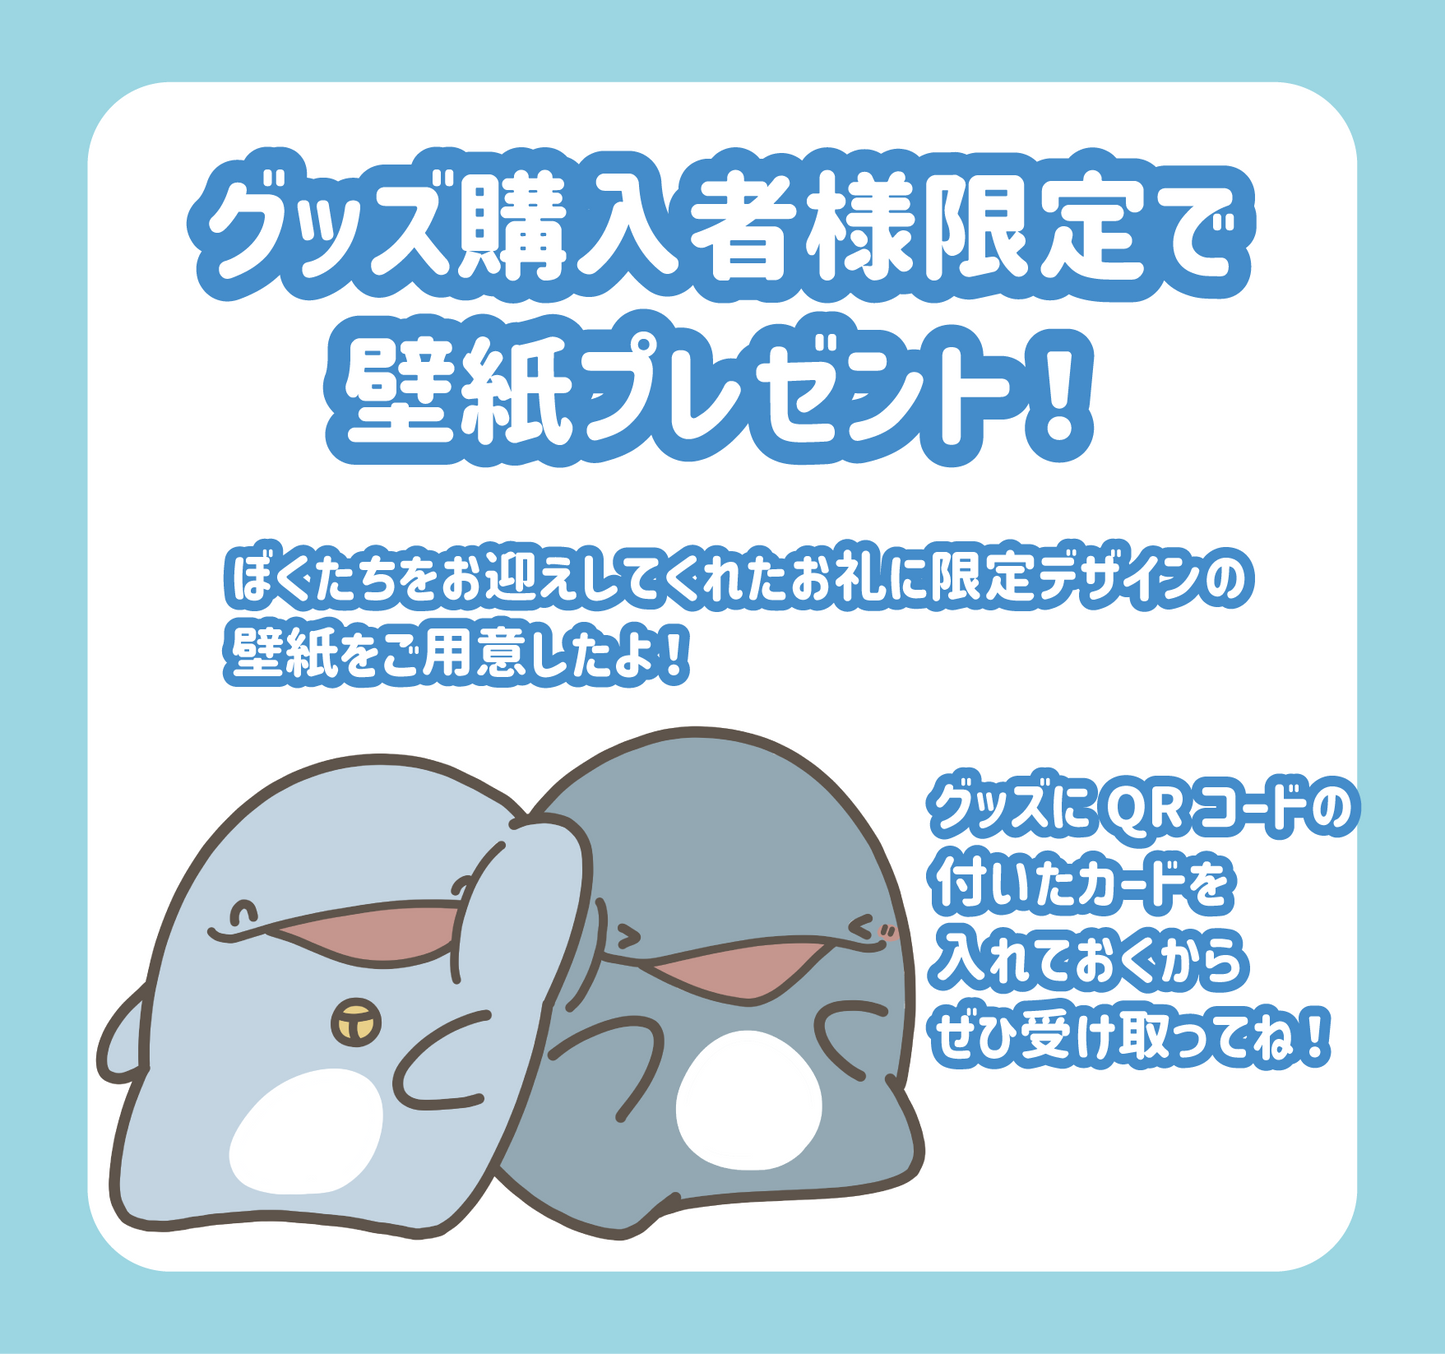 [Delfino genitore e figlio] Distintivo per lattina di delfino e lontra marina genitore e figlio (set di 3)